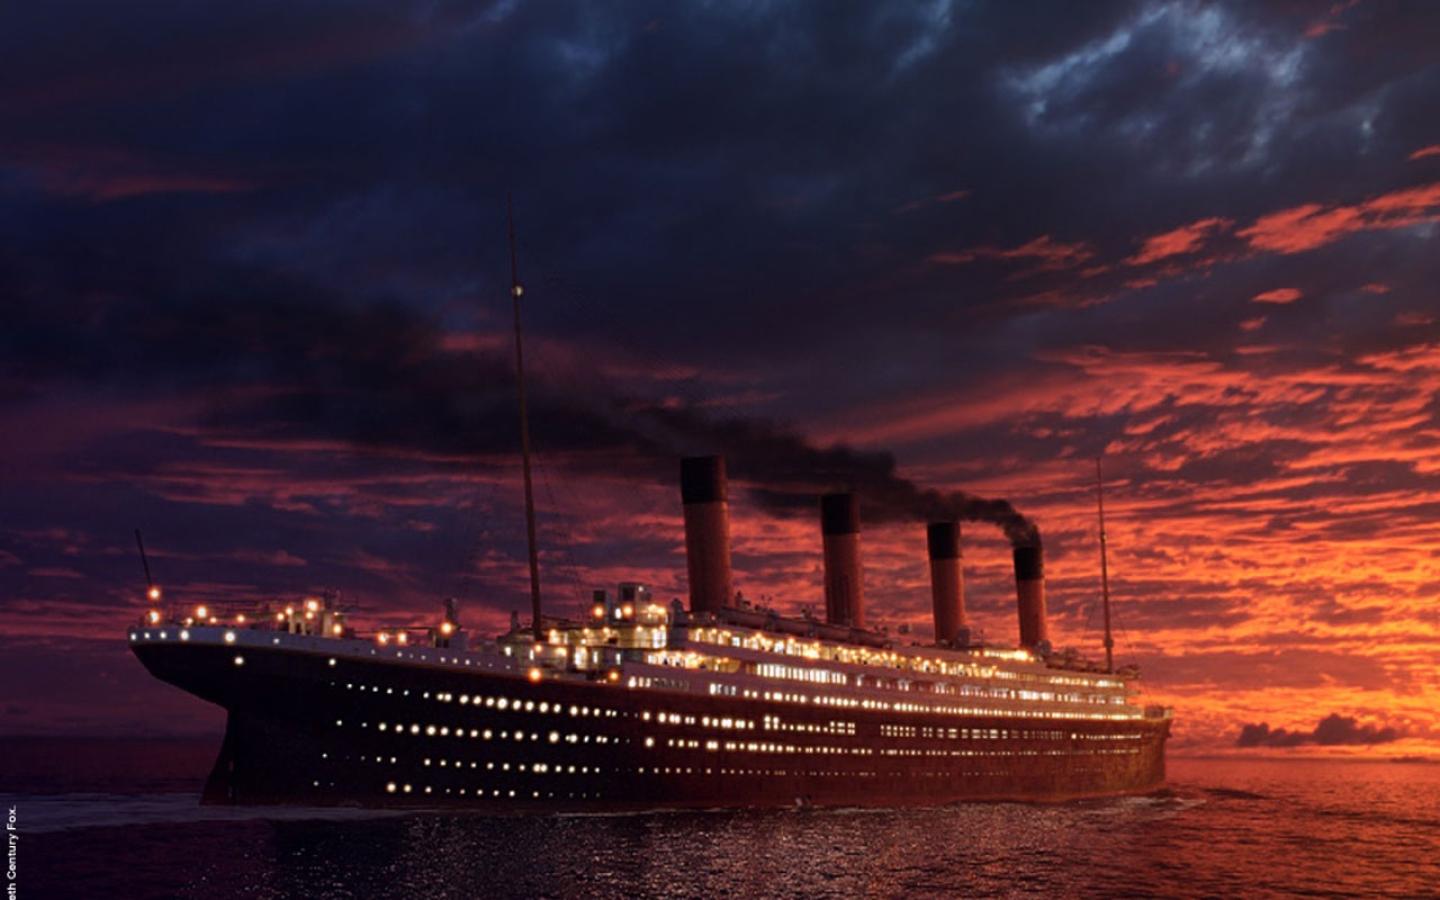 Titanic Wallpaper #3 1440 x 900 